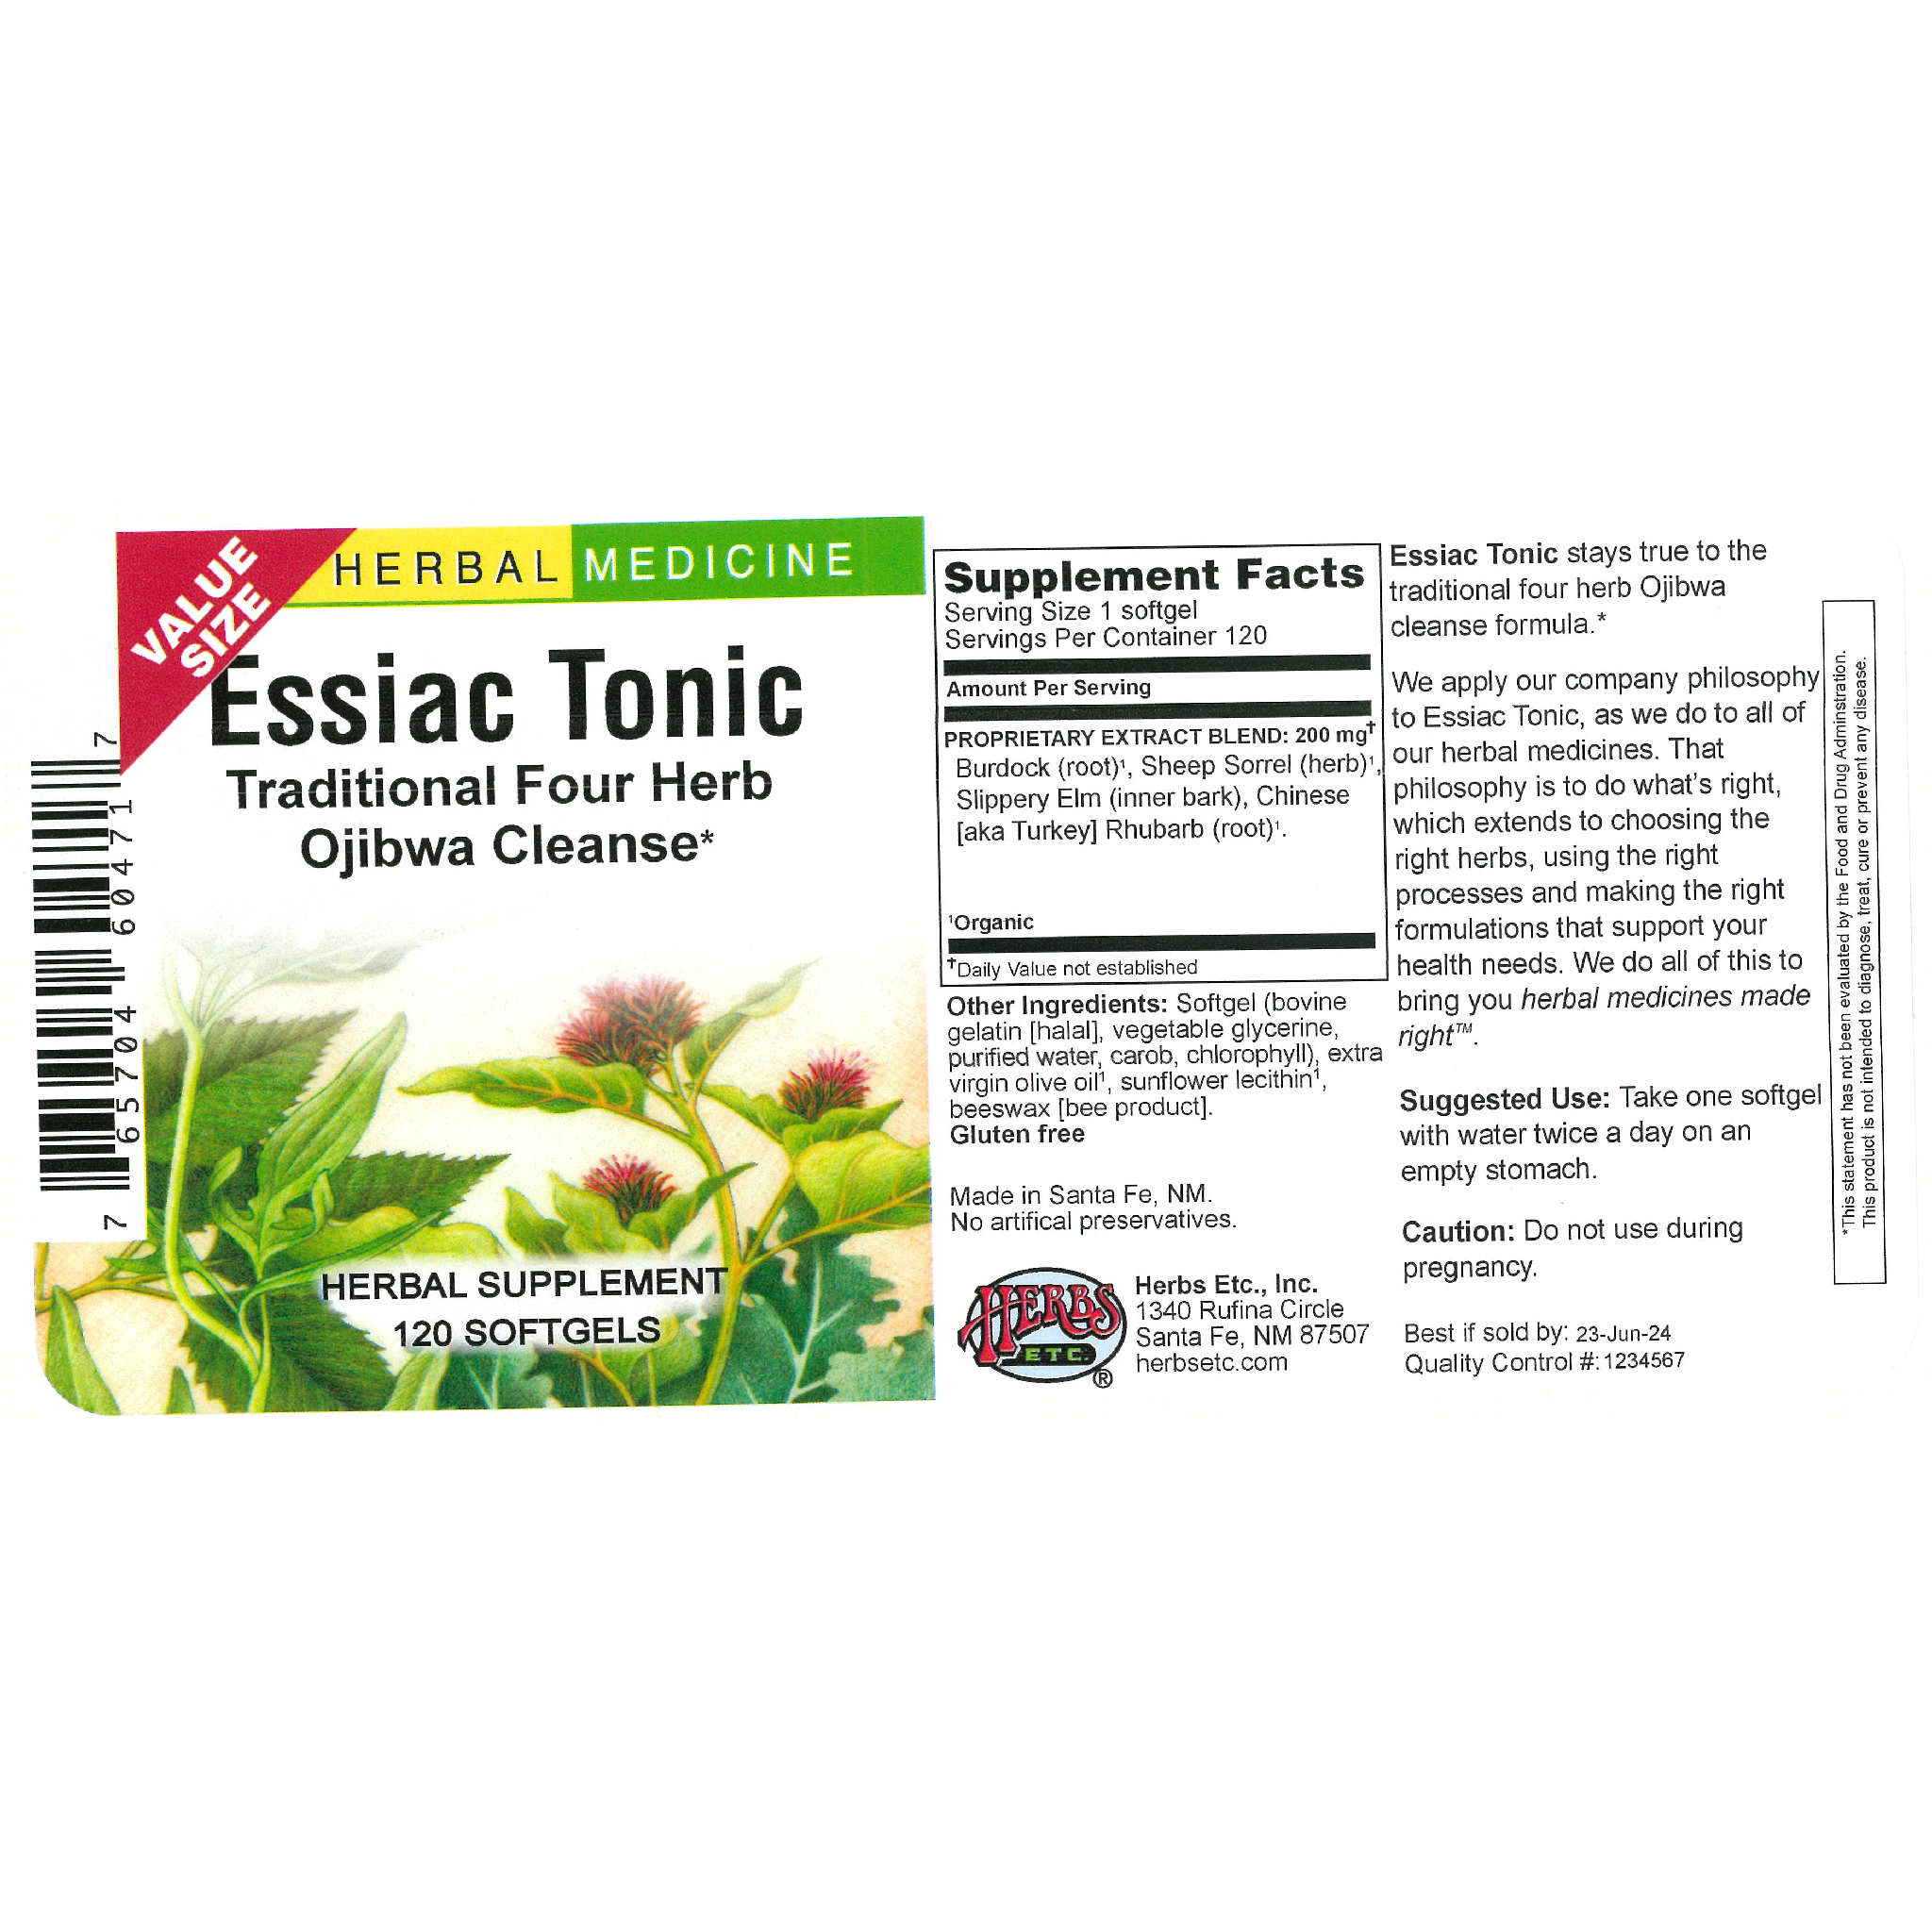 Herbs Etc - Essiac Tonic softgel